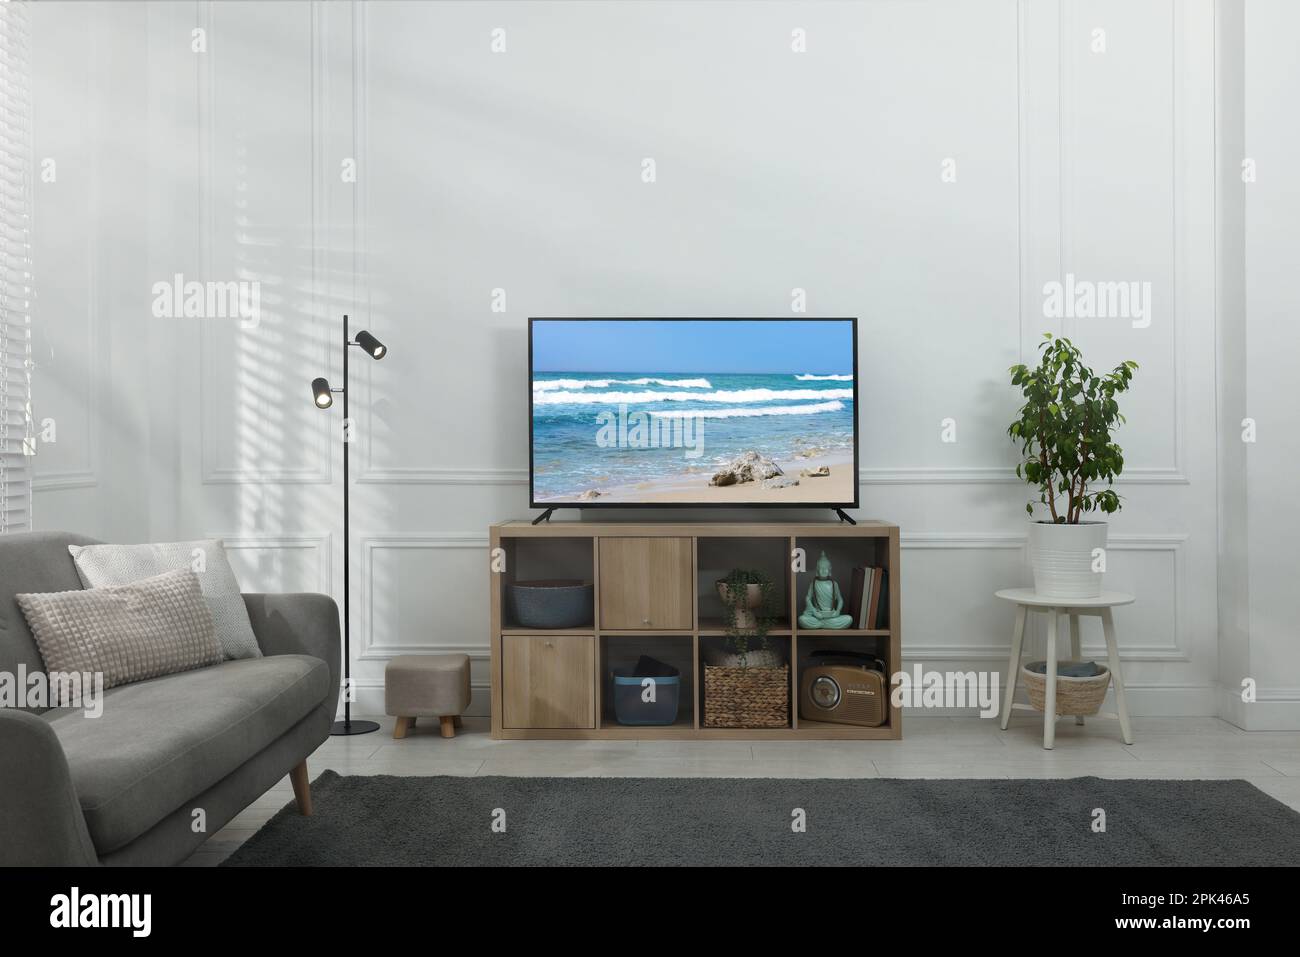 Moderner Fernseher auf Holzständer im Zimmer. Film mit Naturmotiv auf der Leinwand Stockfoto